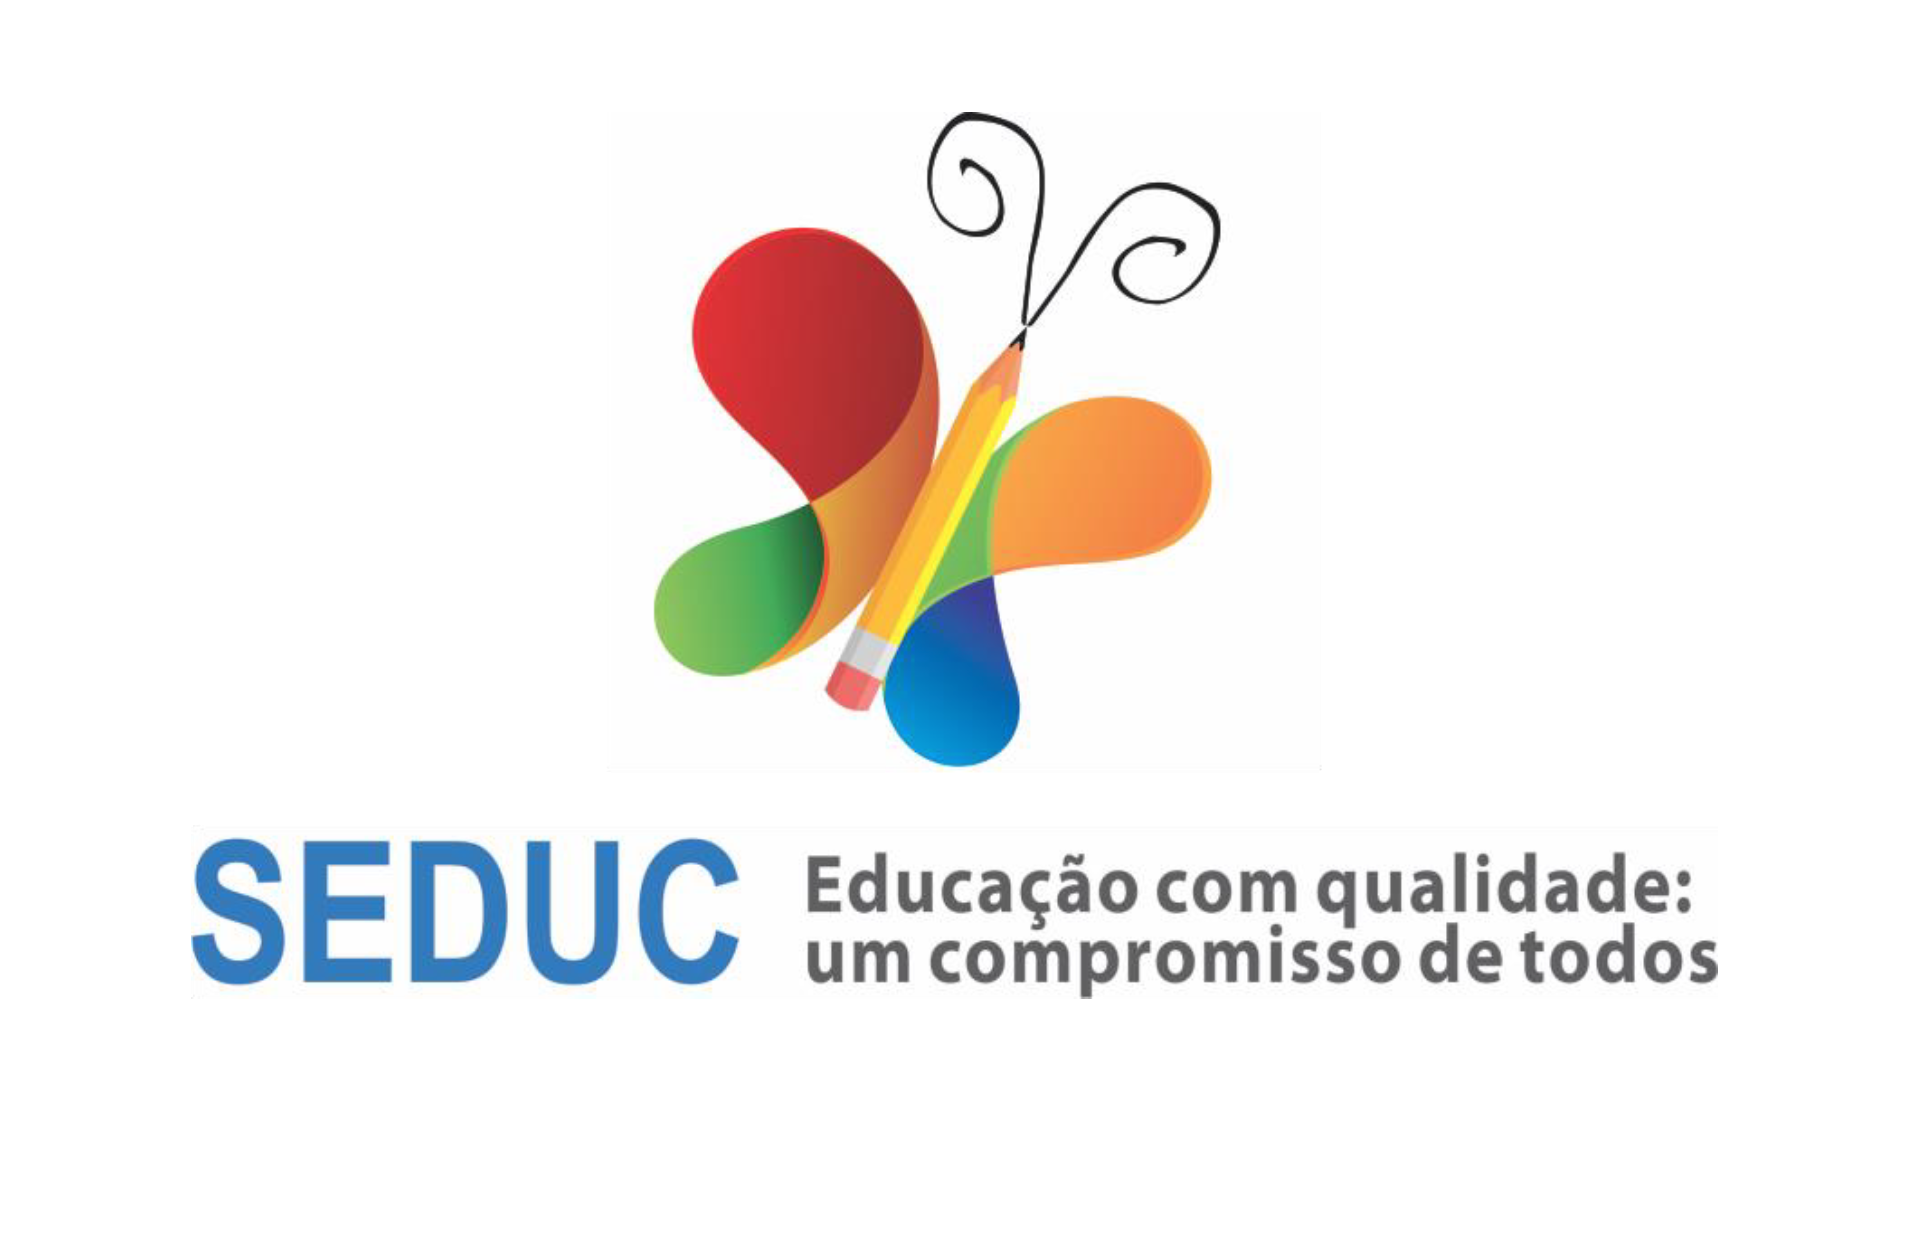 Inscreva-se nas aulas de Canto e Coral e de Teclado ofertadas pela SECULT -  Portal da Prefeitura Municipal de São Francisco do Conde - Bahia